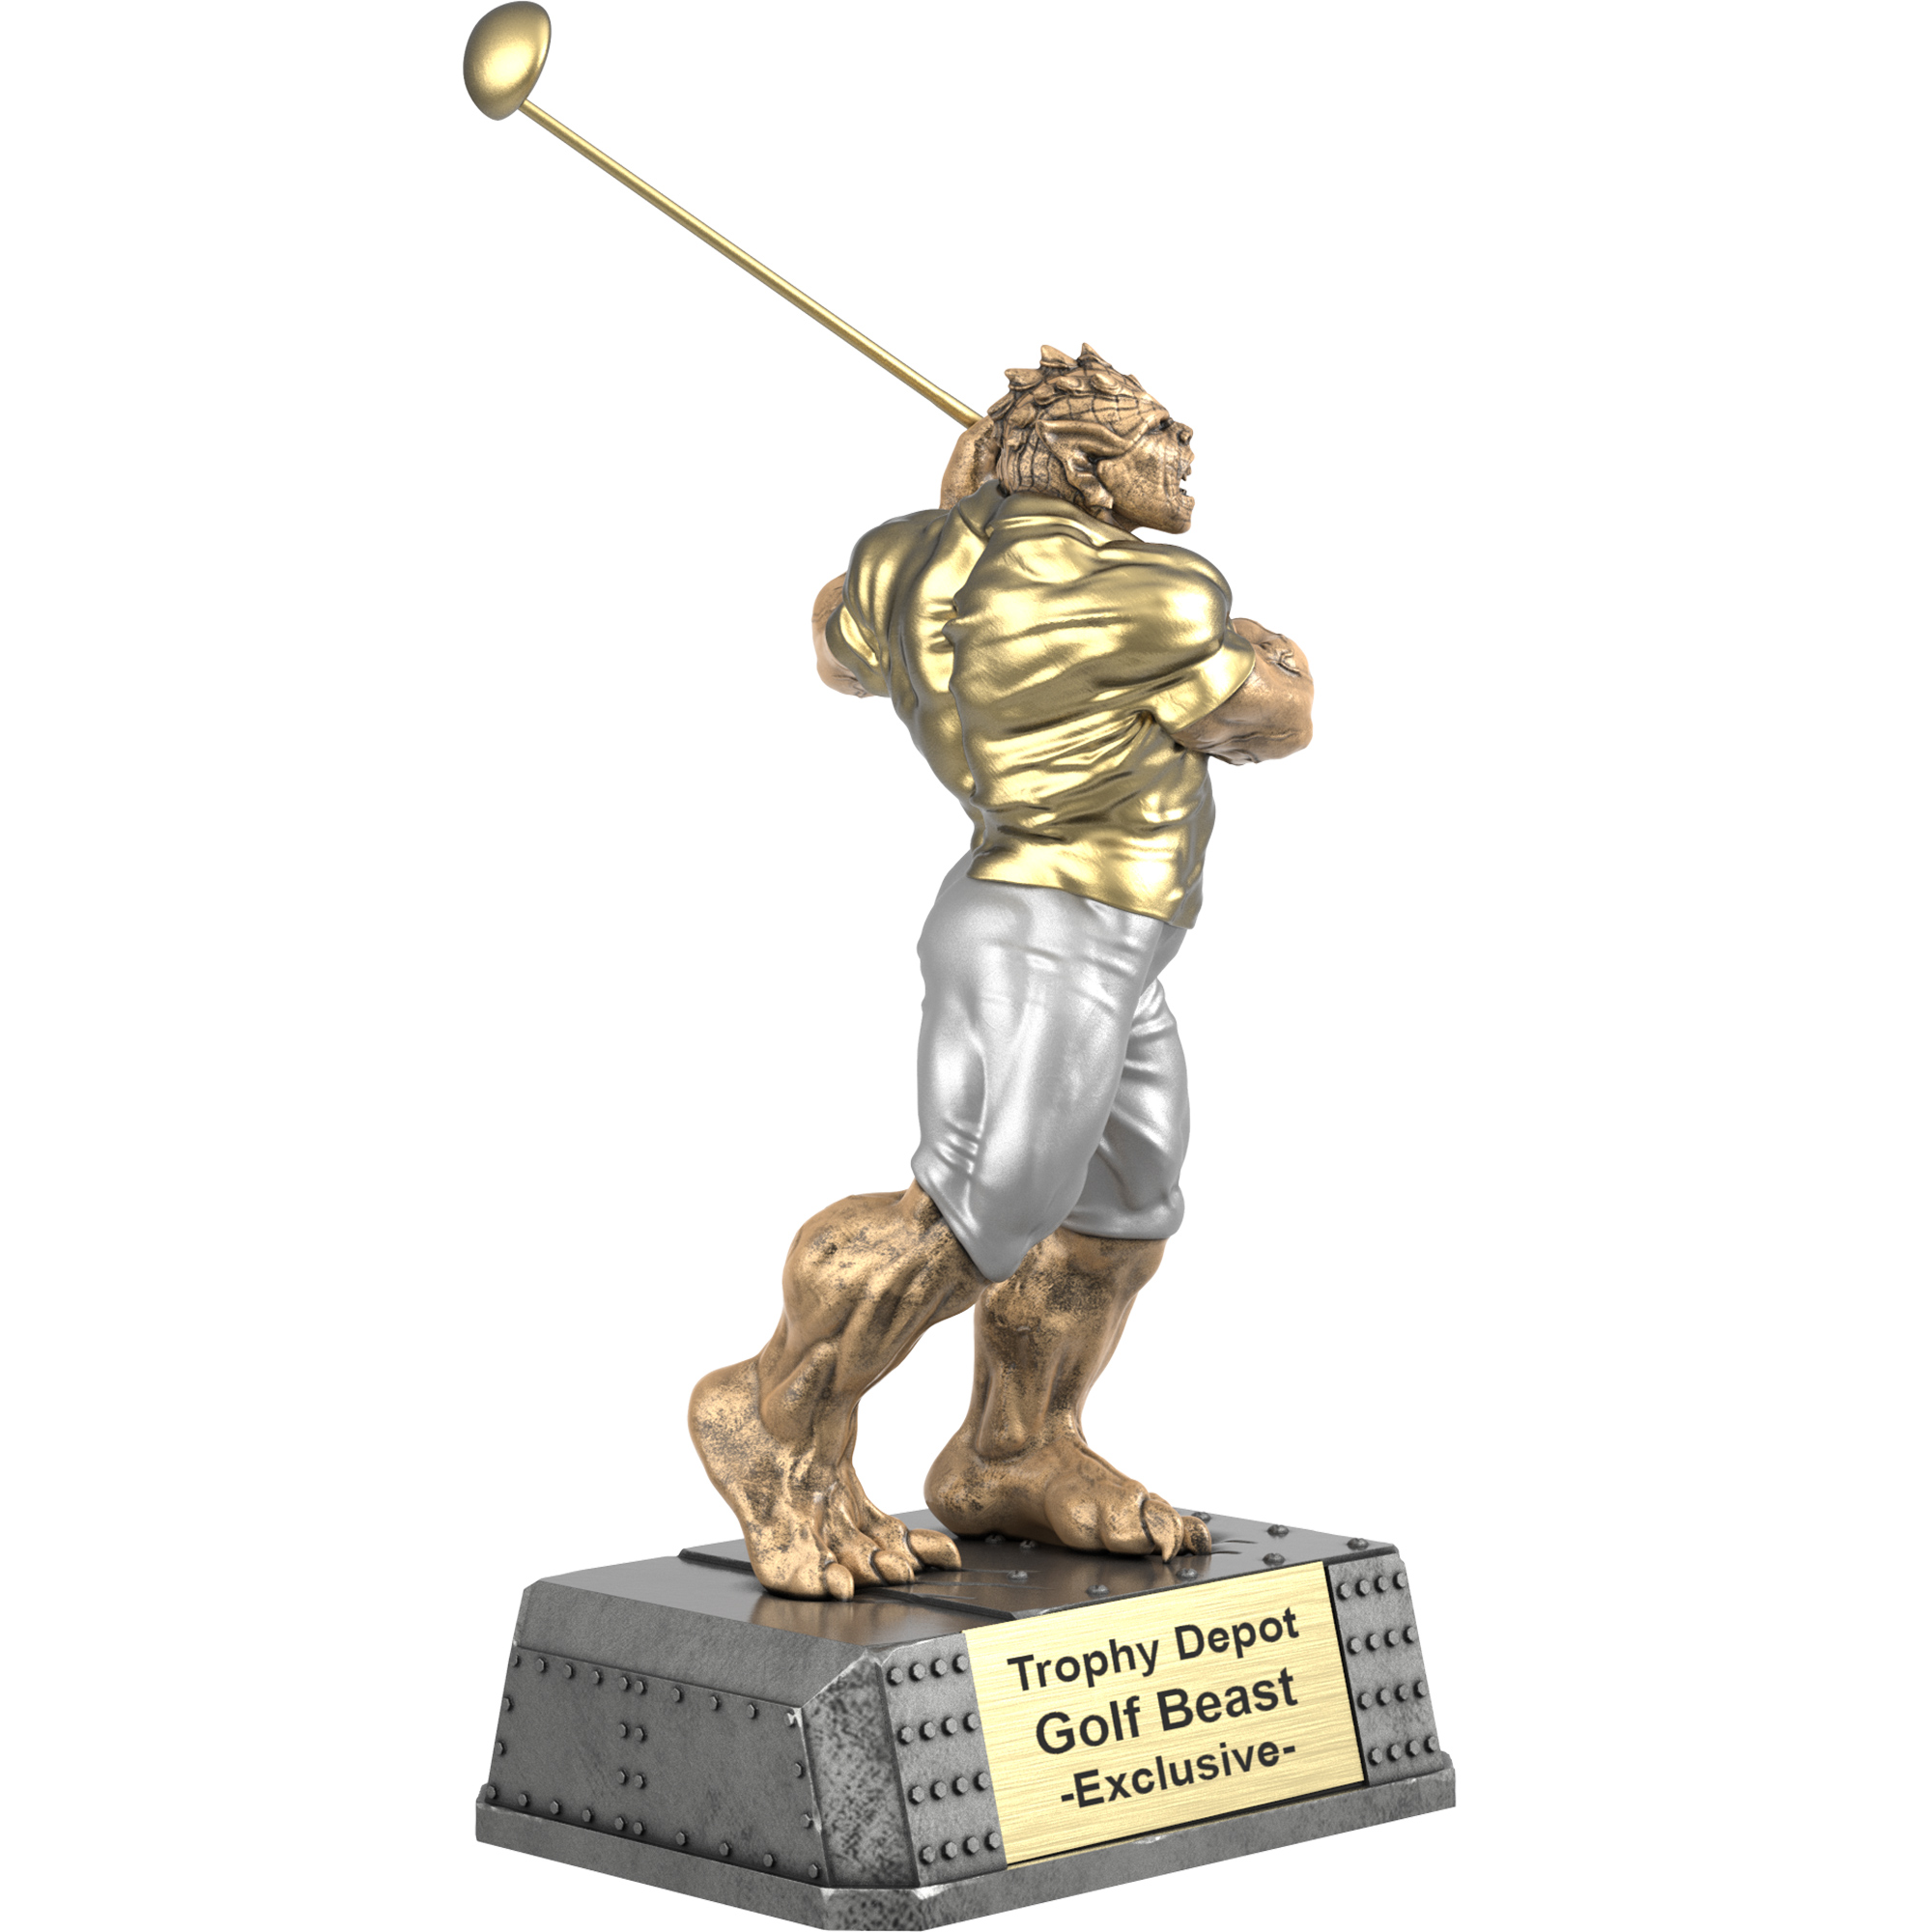 Golf Beast, Monster Sculpture Trophy - 7.5 inch